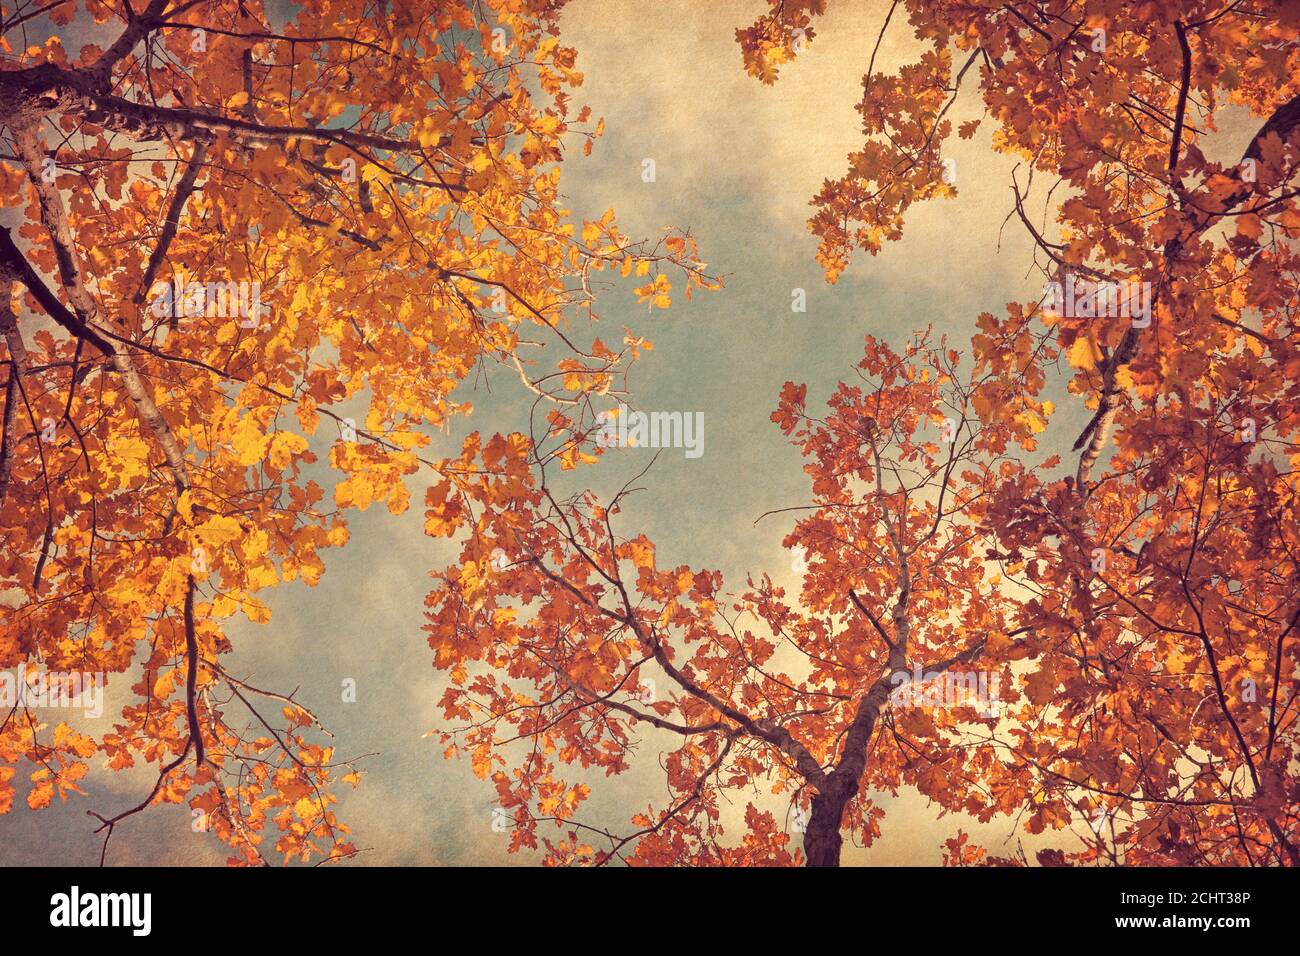 Herbstblätter von Eiche auf dem Himmel Hintergrund. Foto im Retro-Stil. Papierstruktur hinzugefügt. Getöntes Bild. Stockfoto